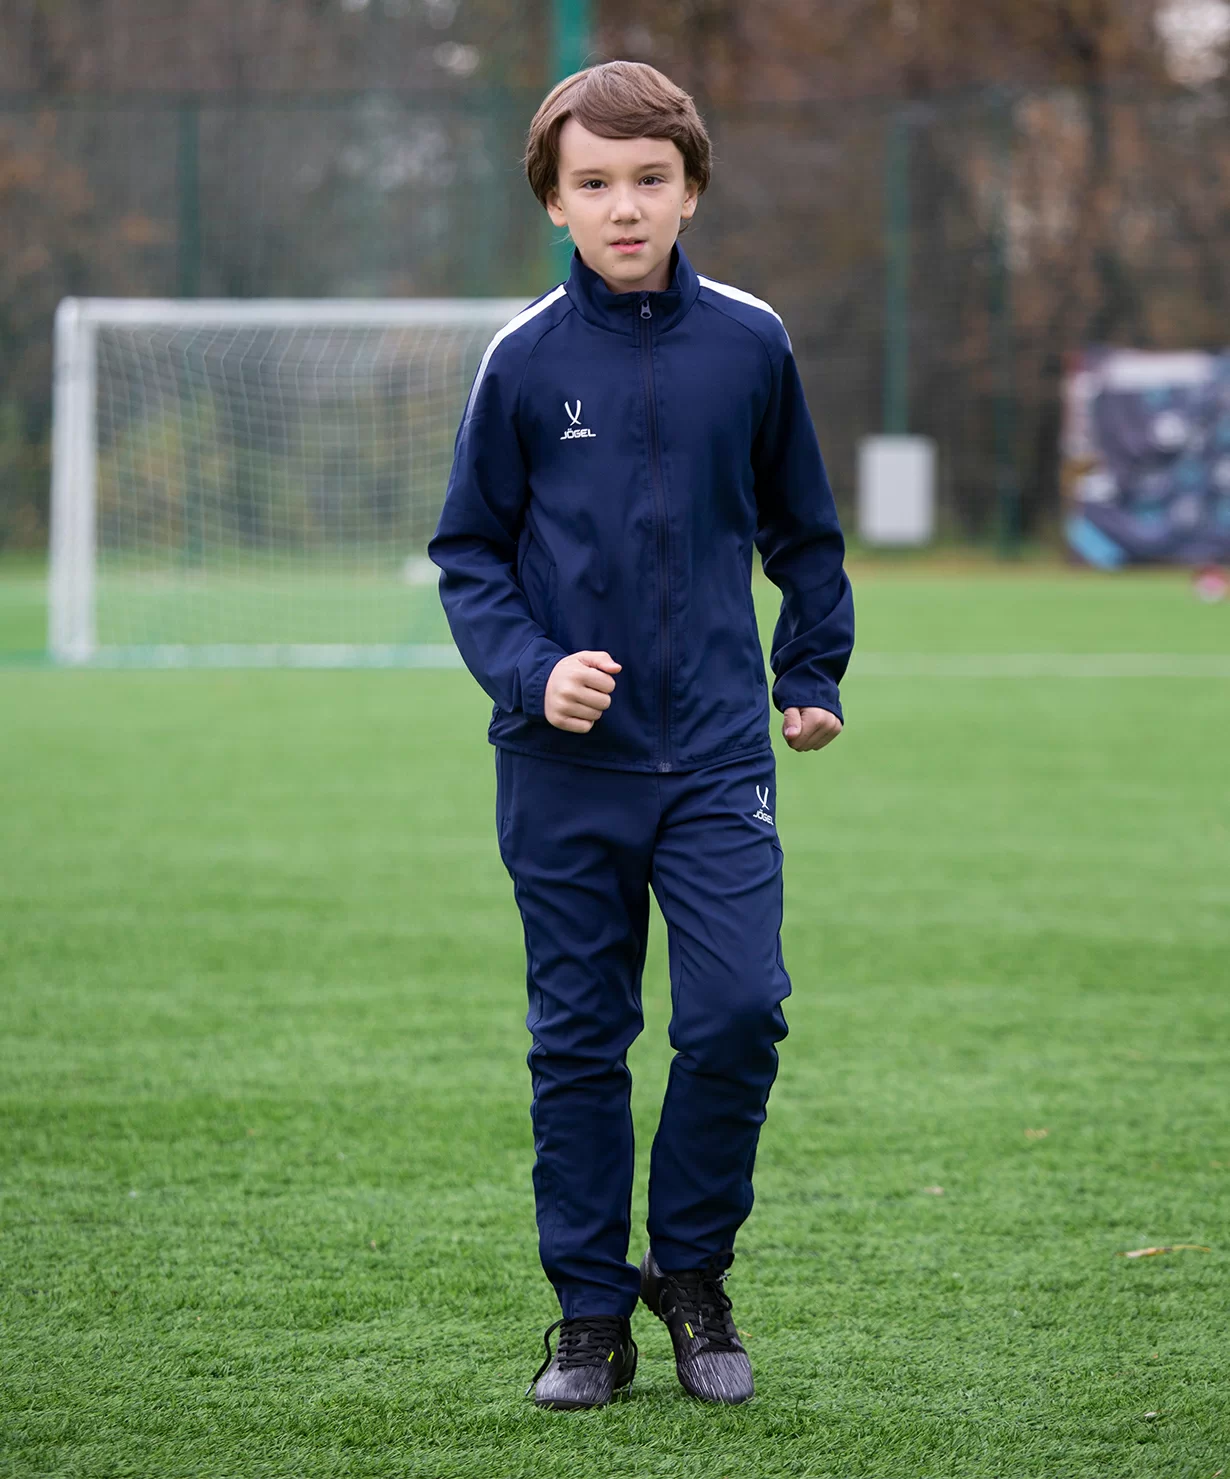 Реальное фото Костюм спортивный CAMP Lined Suit, темно-синий/темно-синий, детский Jögel от магазина СпортЕВ